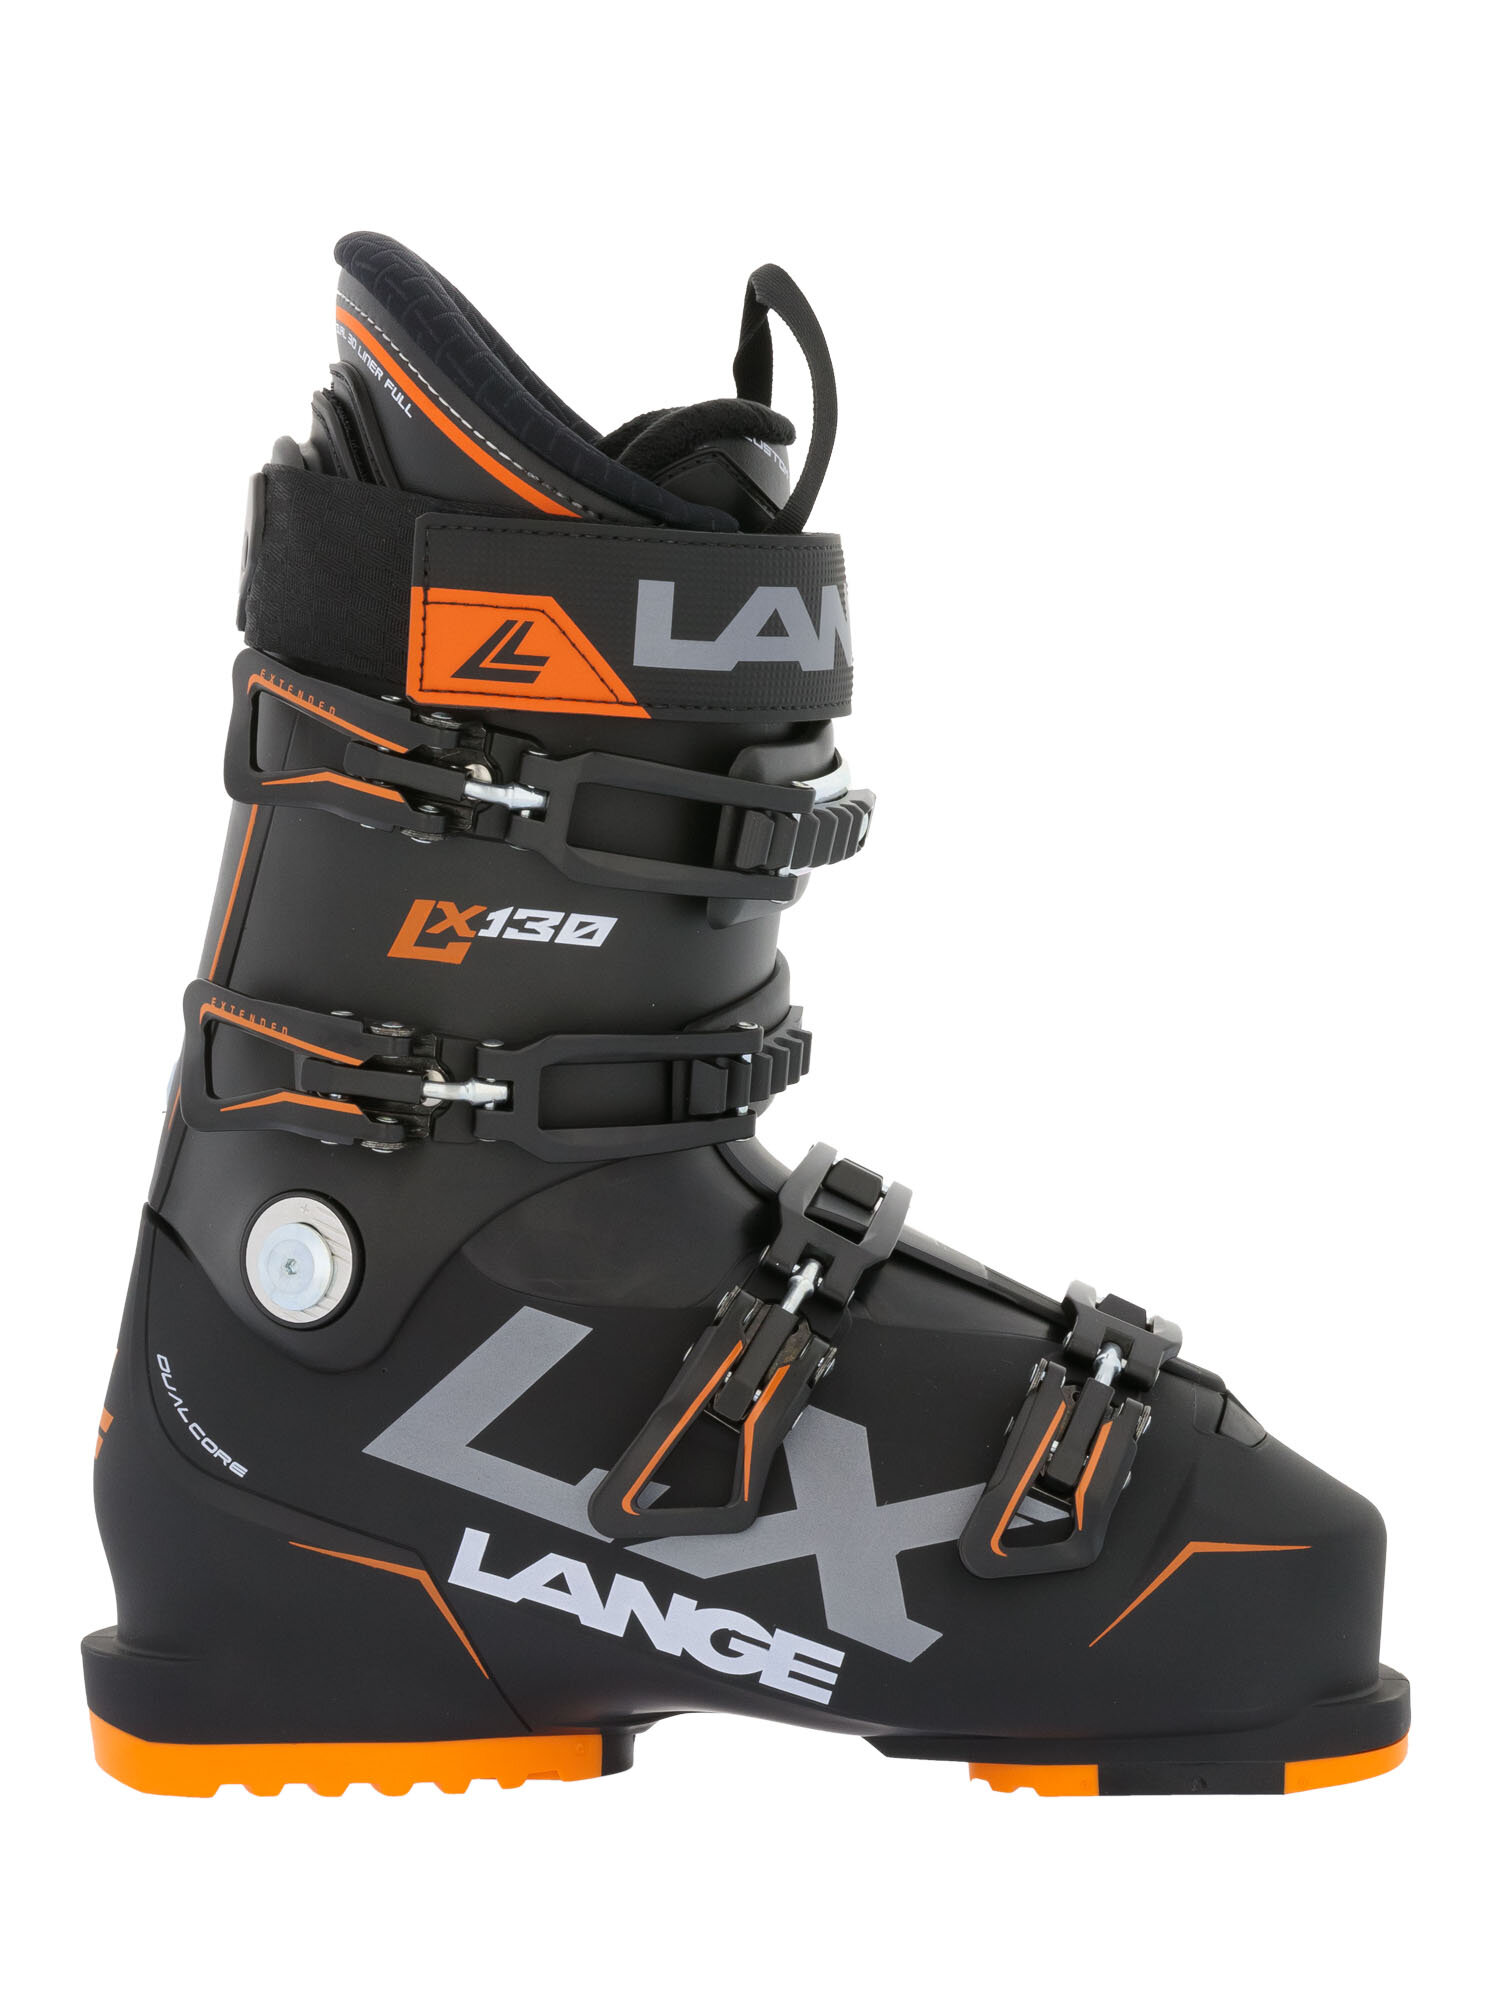 Горнолыжные ботинки LANGE LX 130 Black - Orange (см:25)